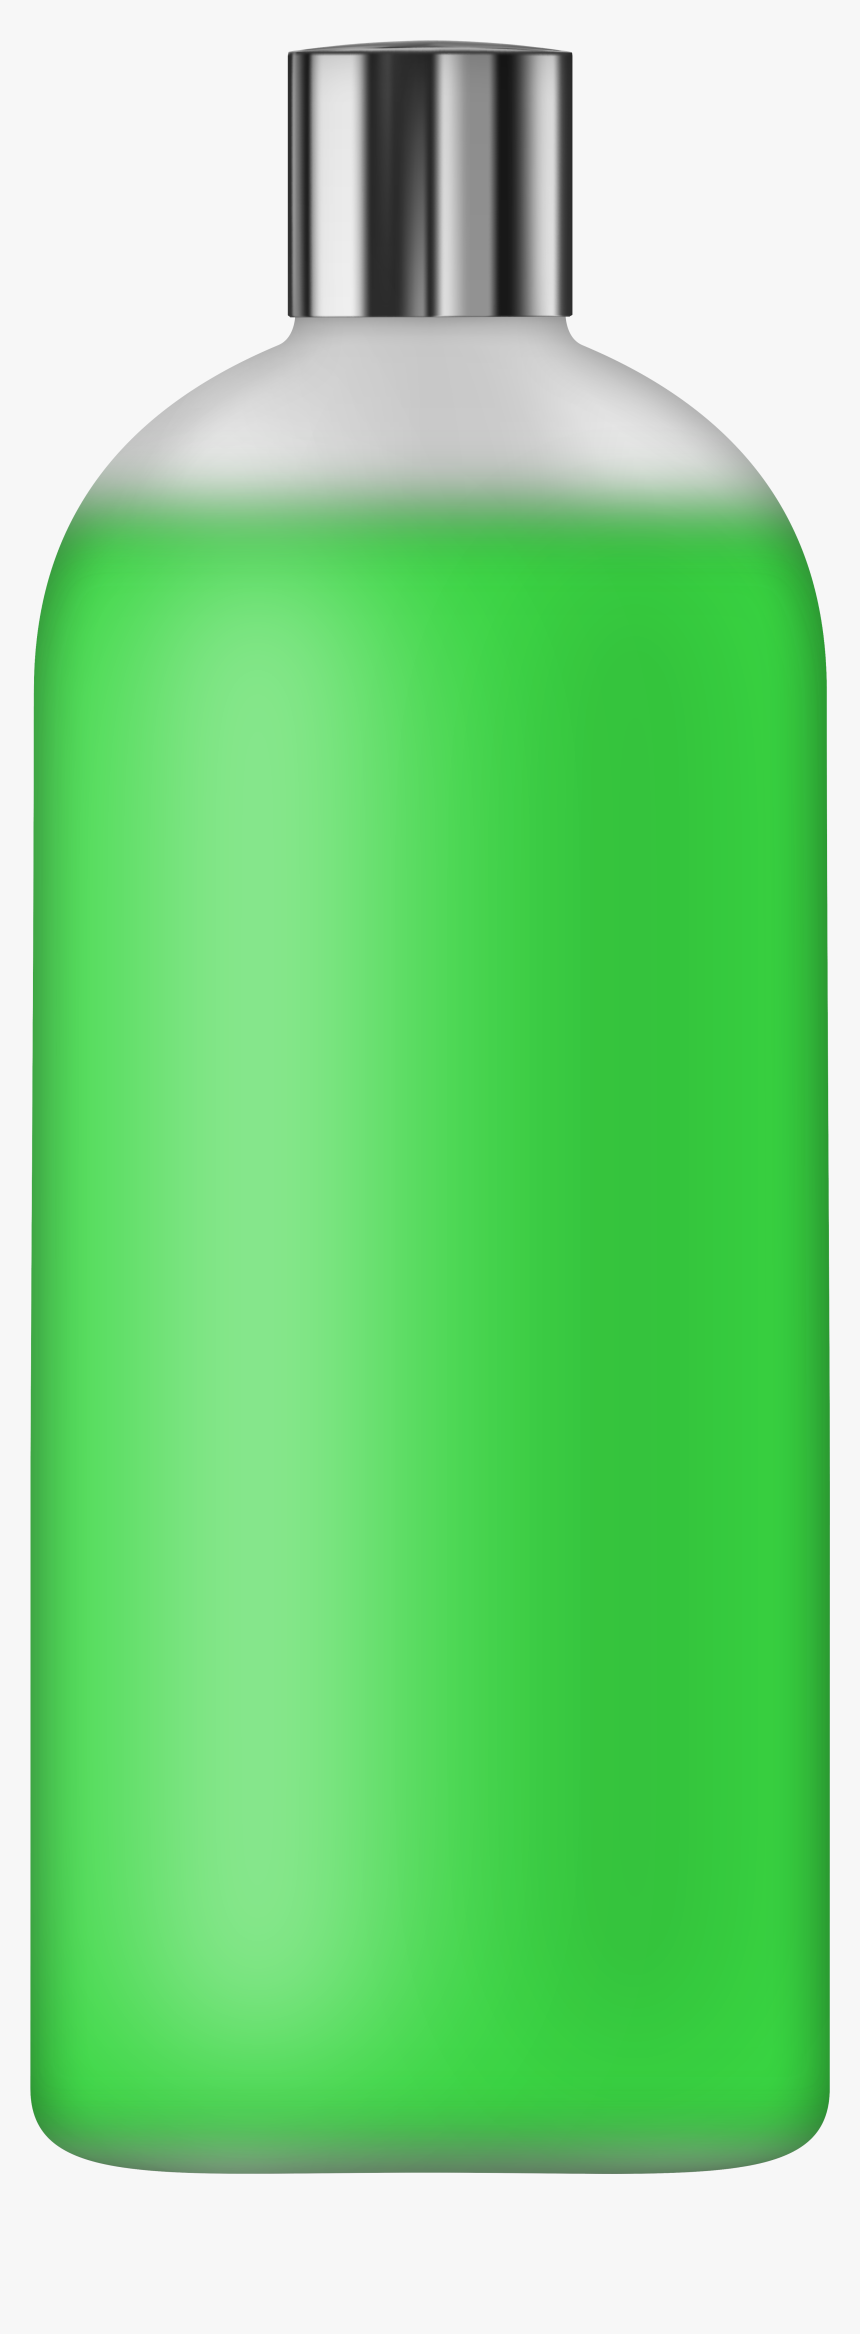 Liquid Soap Green Png Clip Art - Plastic, Transparent Png, Free Download